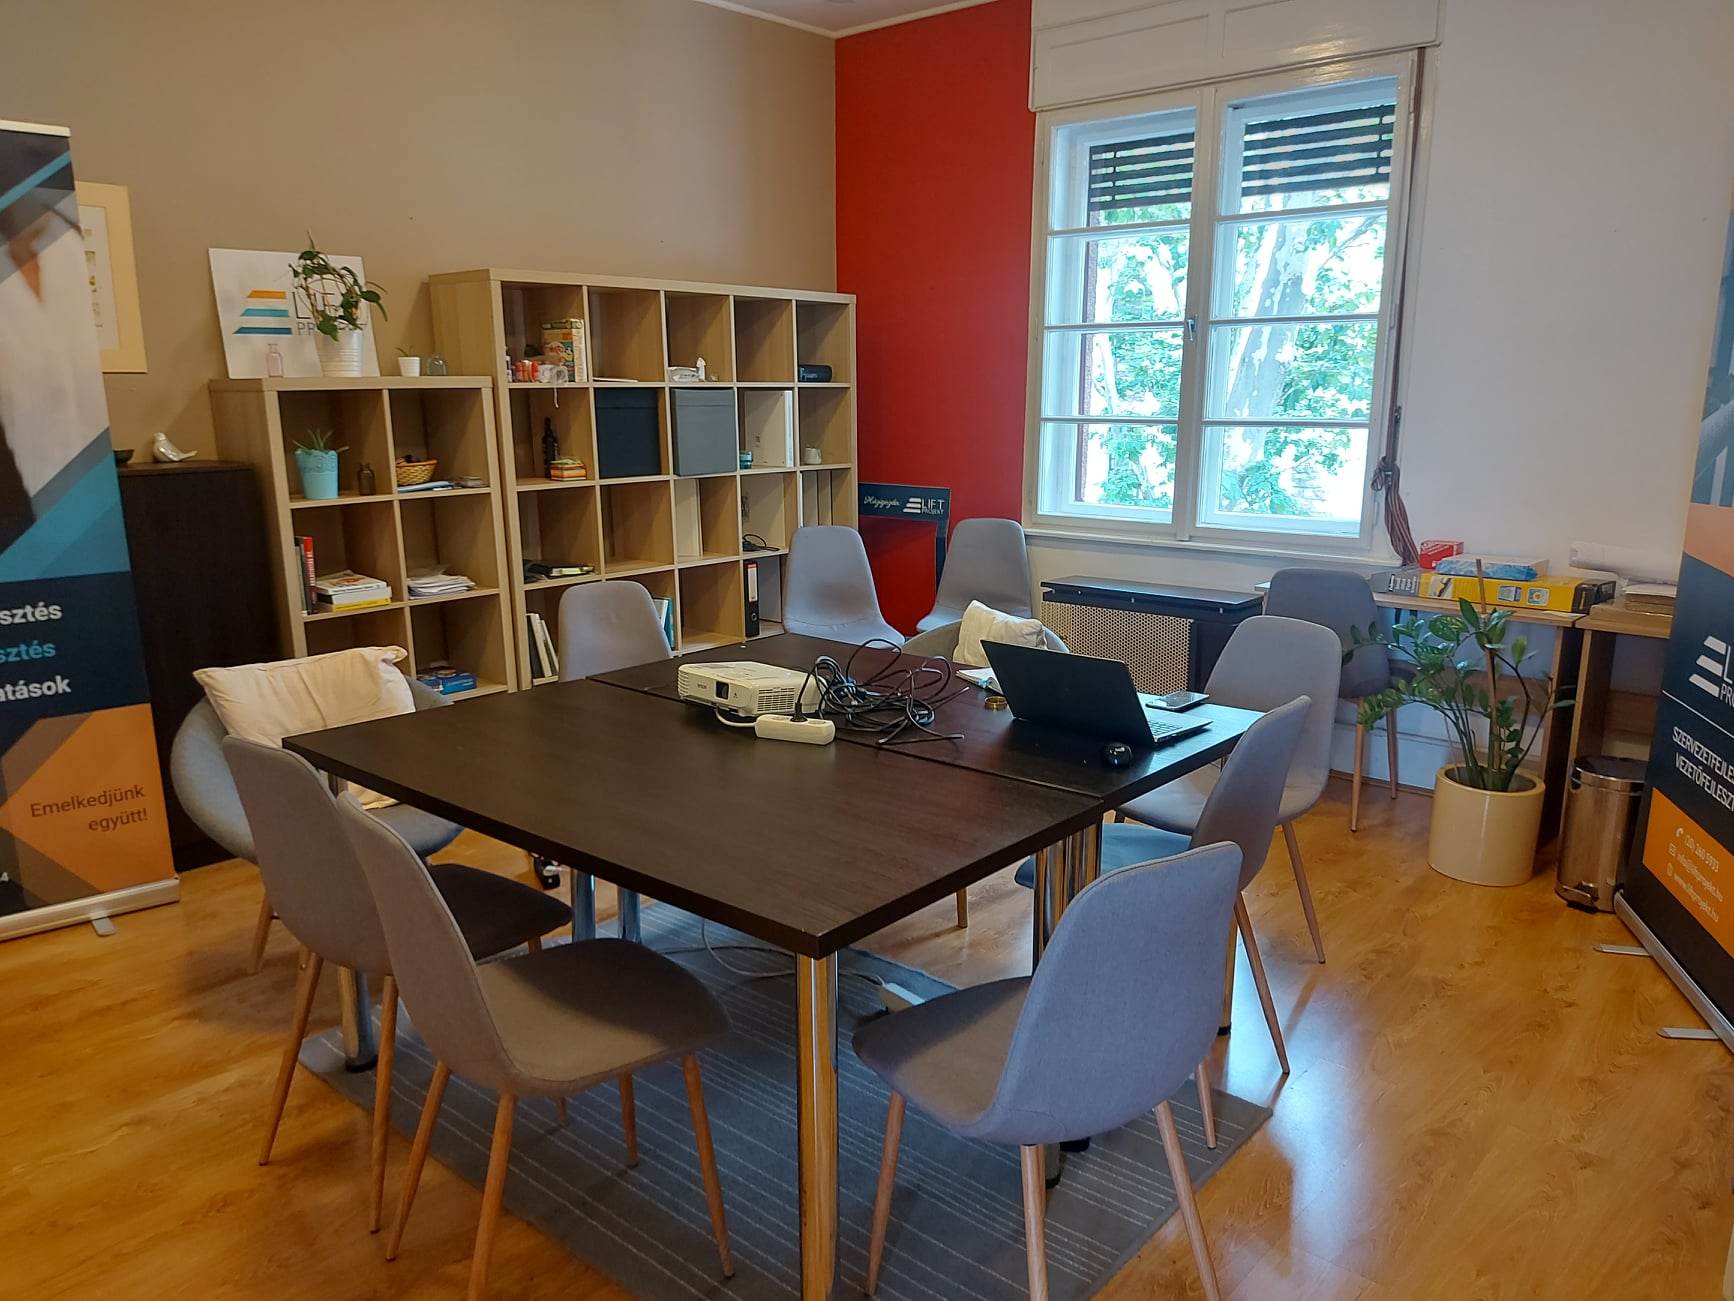 Eladó Pécs, Belvárosban lakásnak/irodának ideális polgári ingatlan